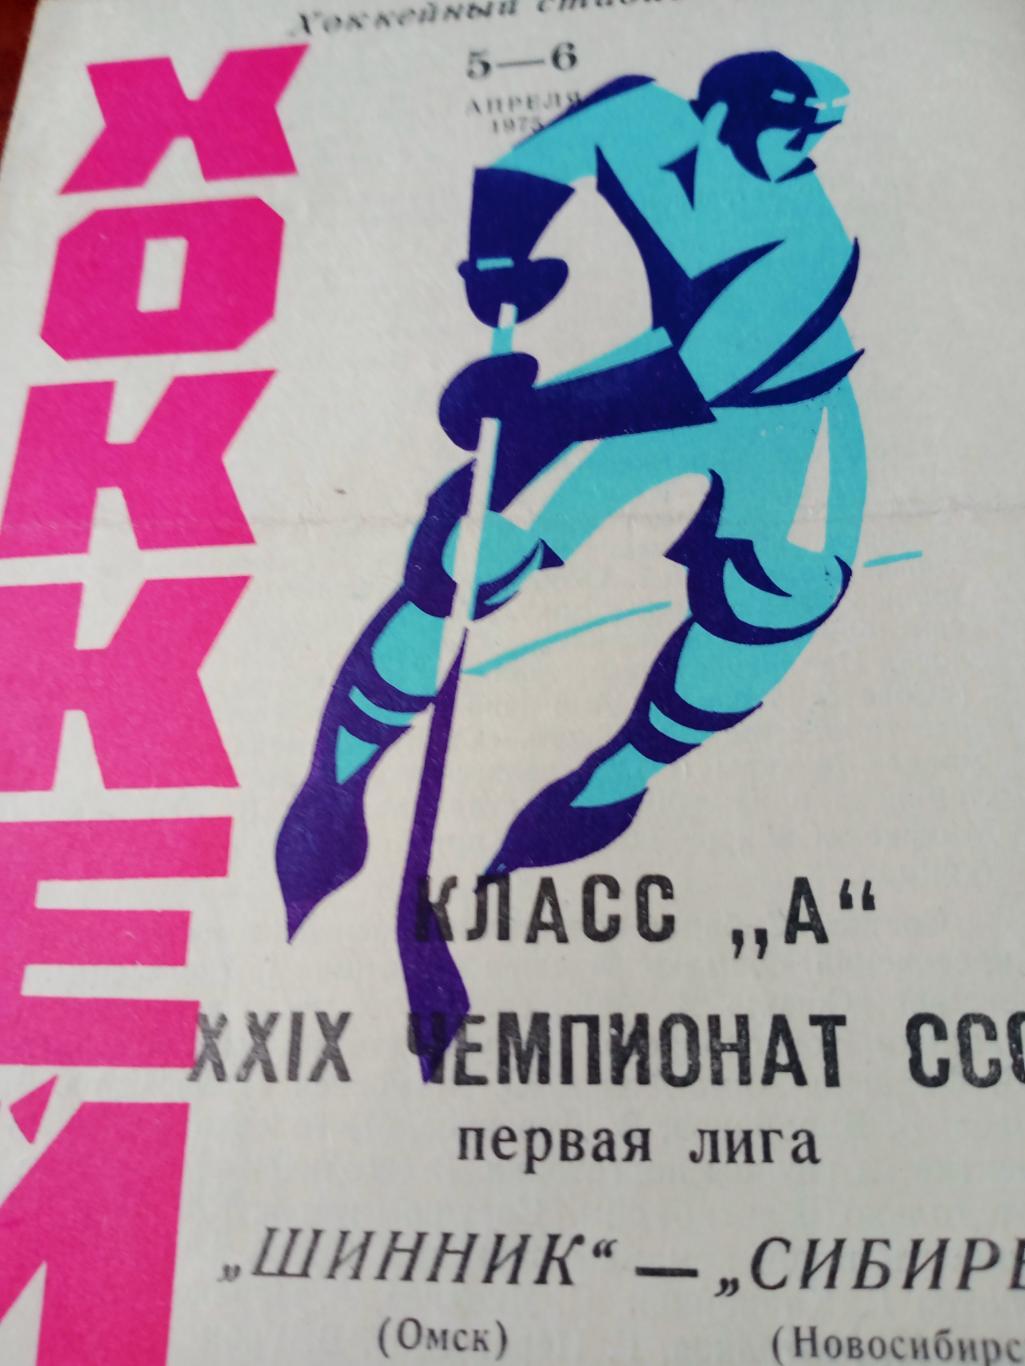 Шинник Омск - Сибирь Новосибирск. 5 и 6 апреля 1975 год